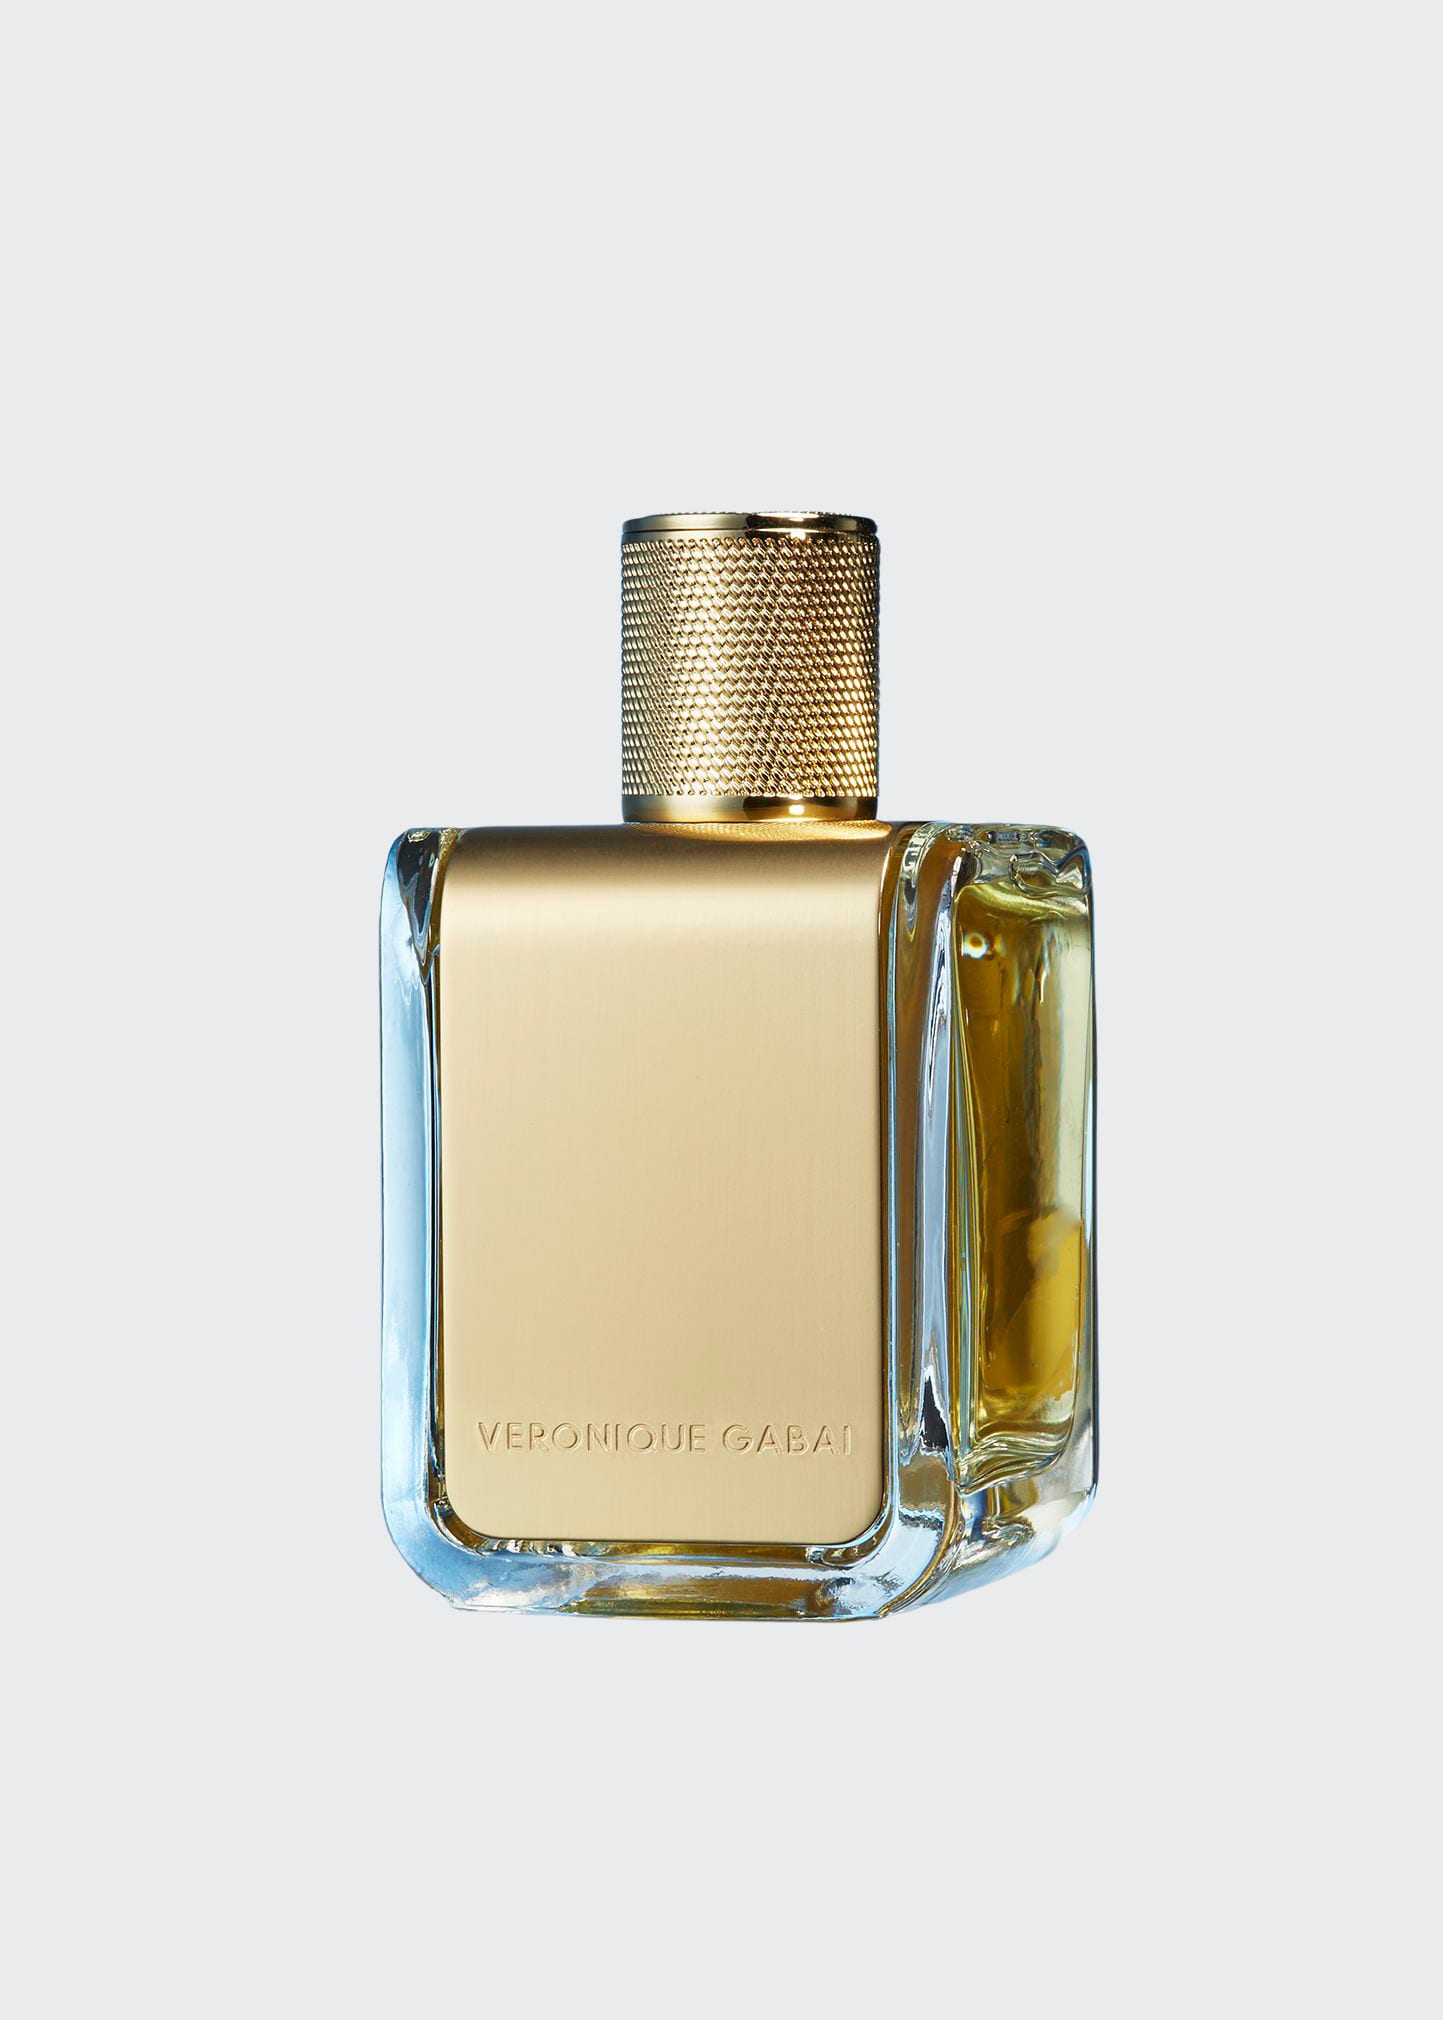 Veronique Gabai Cap D'antibes Eau De Parfum, 2.8 Oz./ 85 ml